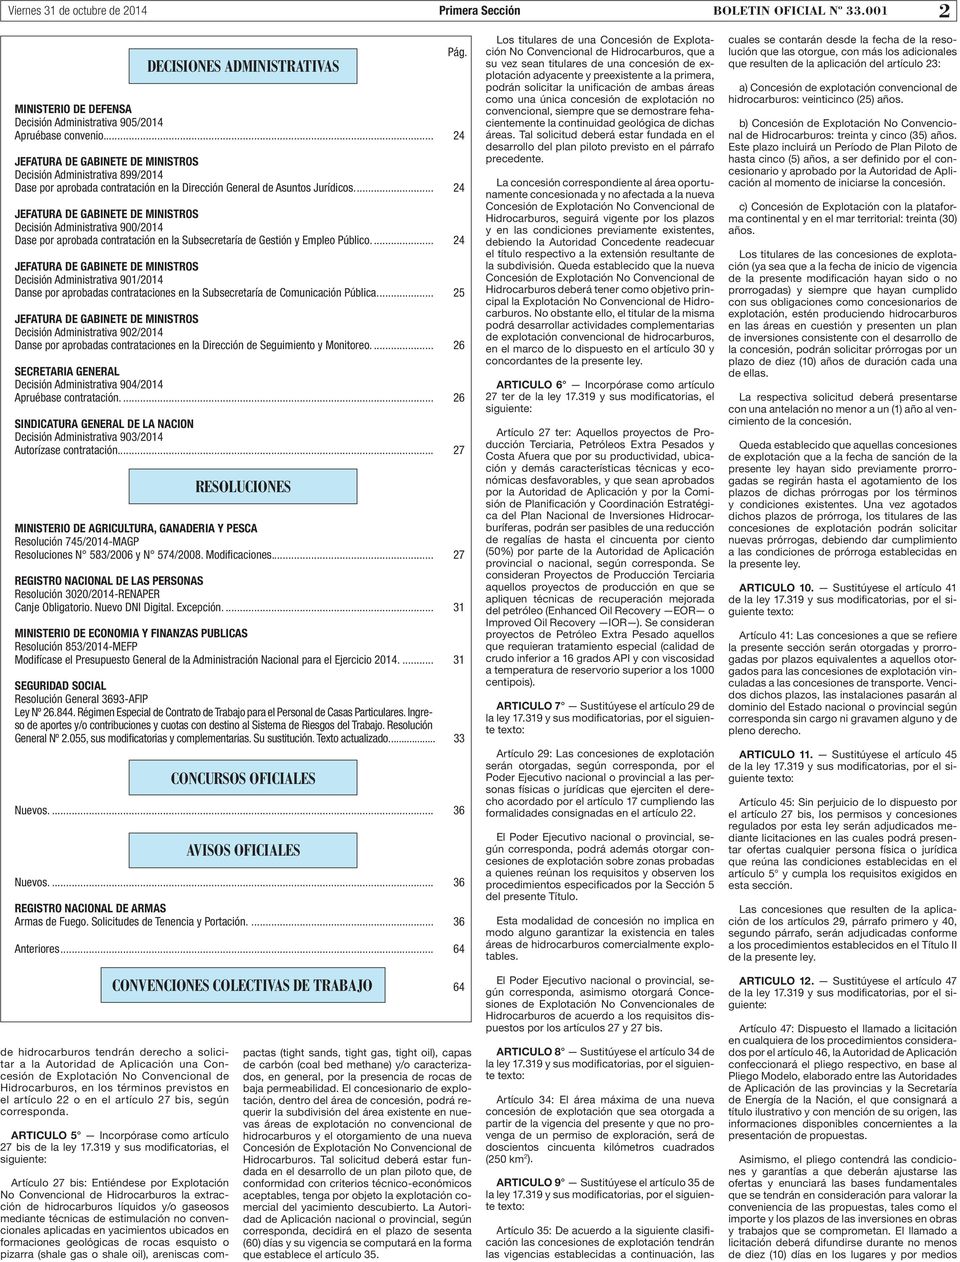 .. 24 JEFATURA DE GABINETE DE MINISTROS Decisión Administrativa 900/2014 Dase por aprobada contratación en la Subsecretaría de Gestión y Empleo Público.